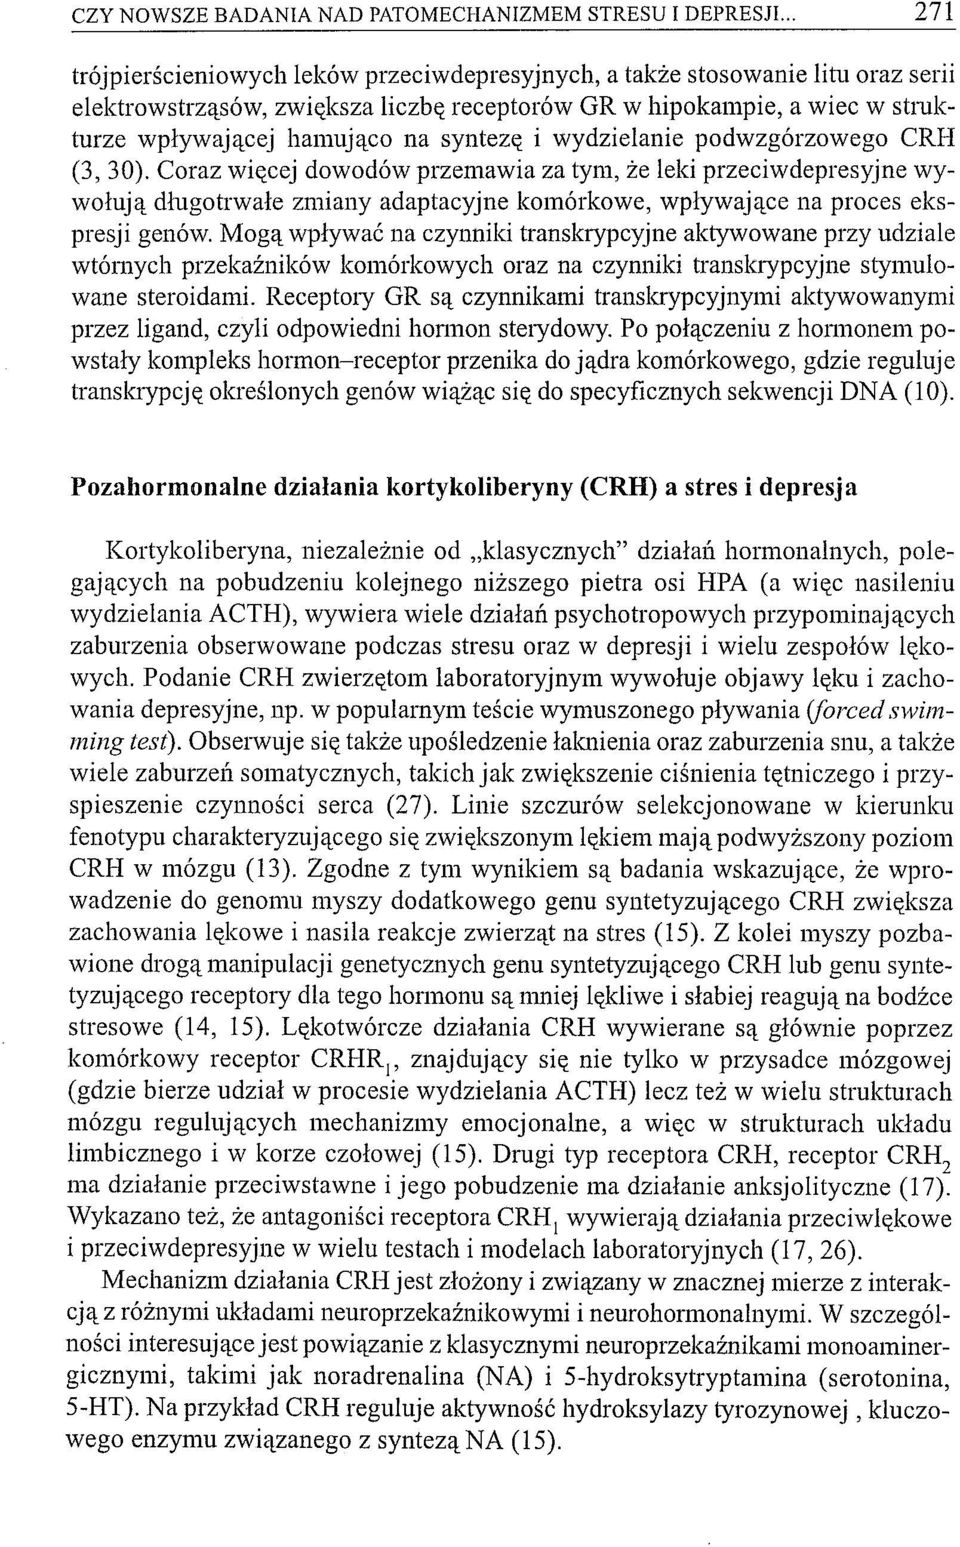 syntezę i wydzielanie podwzgórzowego CRH (3,30).